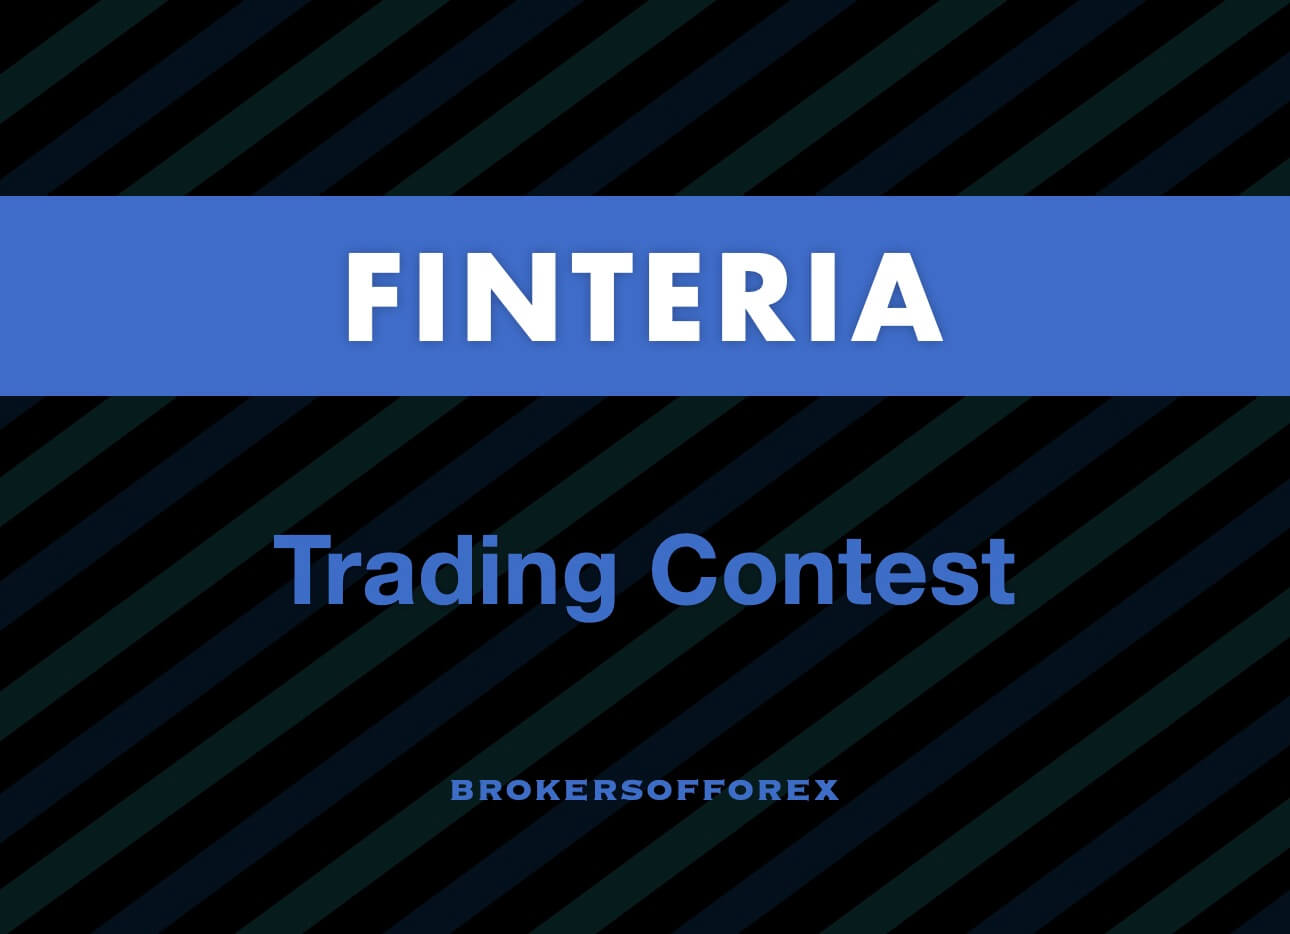 Finteria Trading Contest